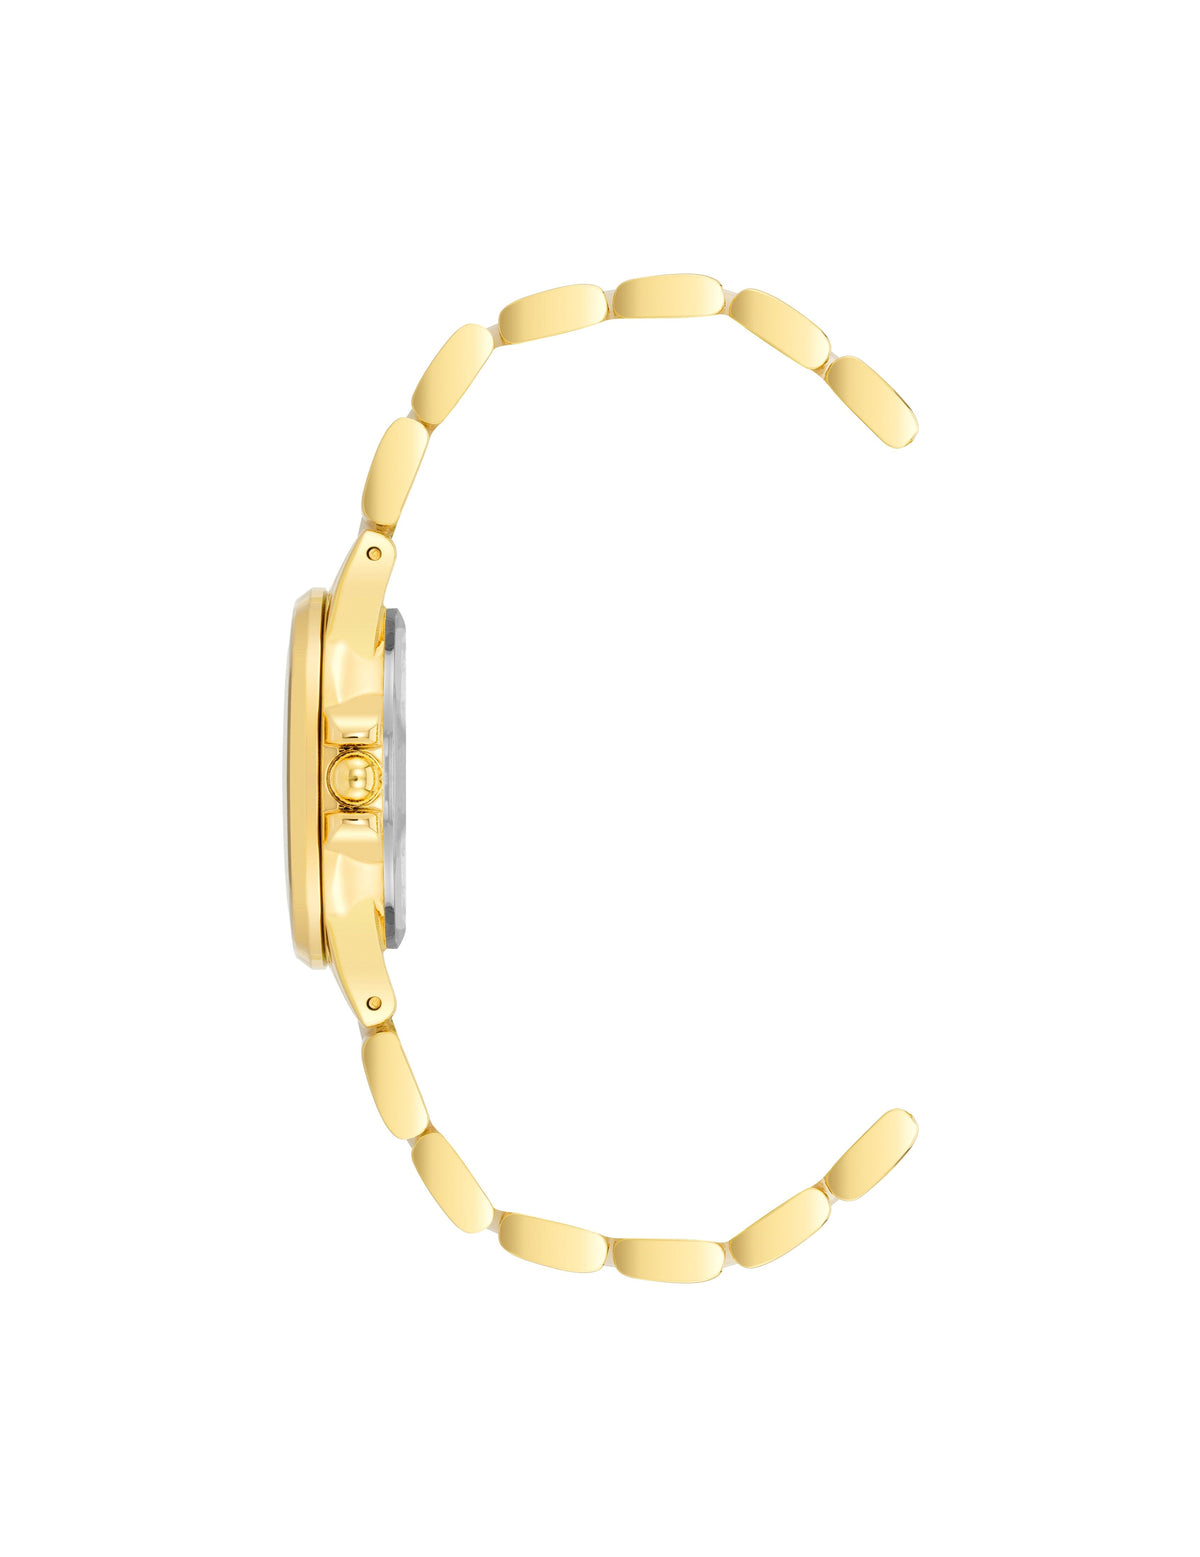 Anne Klein  Diamond Accented Ceramic Bracelet Watch